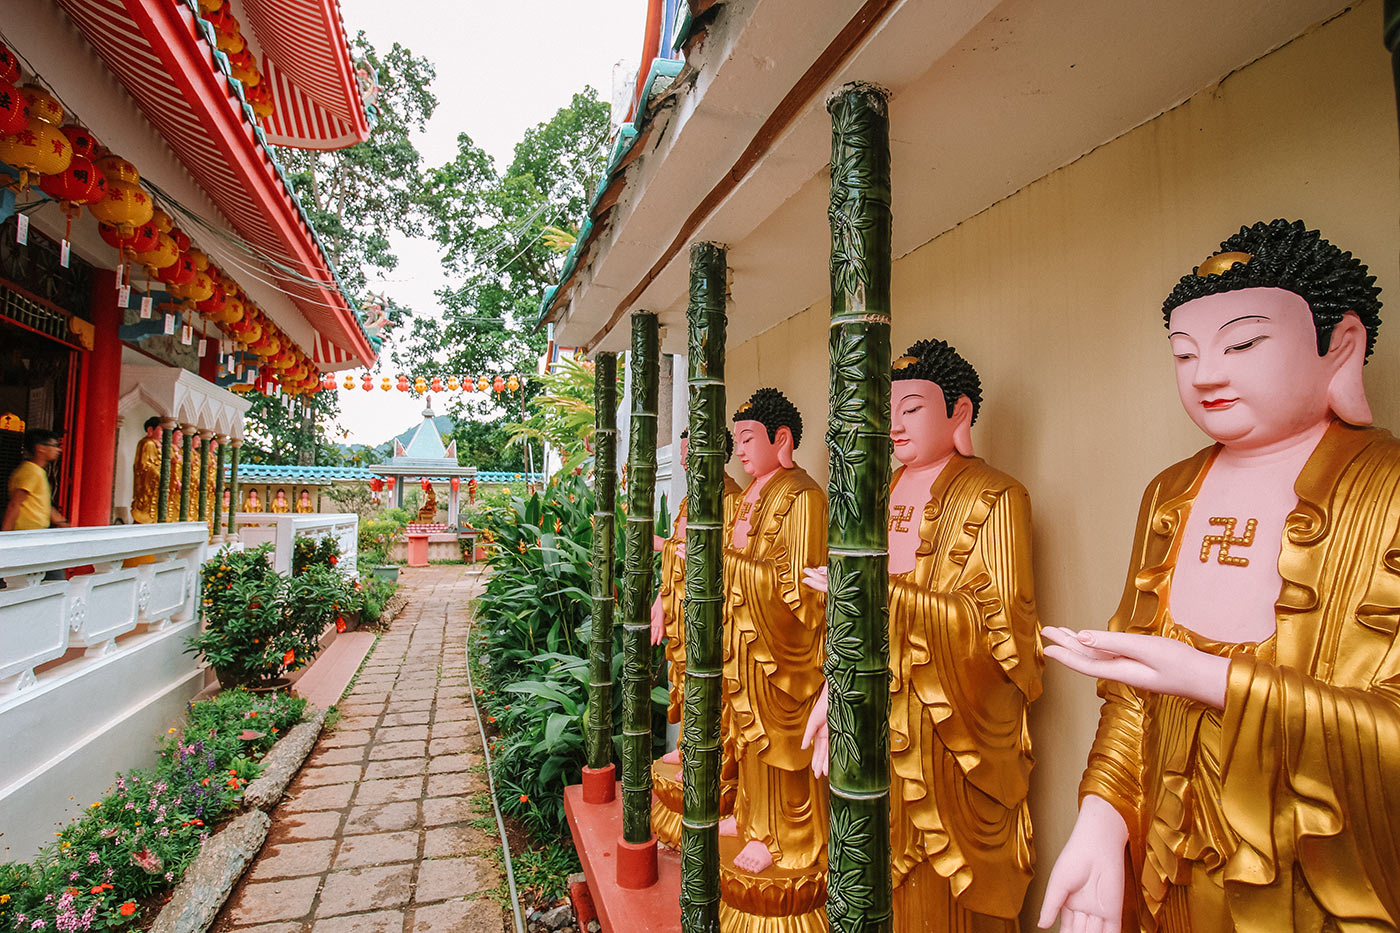 Công trình chính của chùa là một bảo tháp cao 30m mái kiểu Myanmar. Tháp là nơi trung bày và thờ tự hơn 1000 tượng và hình ảnh Phật, trong đó có bức tượng Quán Thế Âm Bồ Tát cao 36,5m đúc bằng đồng.Tuy rất rộng nhưng việc đi lại trong chùa gần như khép kín với các hành lang nối liền từ gian thờ này tới gian thờ khác. Du khách dễ dàng lên, xuống dốc tới các khu thờ bằng cáp treo. Điểm ấn tượng nhất đối với du khách khi đặt chân đến chùa có lẽ là mùi mì laska thơm nồng của những hàng ăn bán món truyền thống có mặt ở khắp các lối vào chùa. 